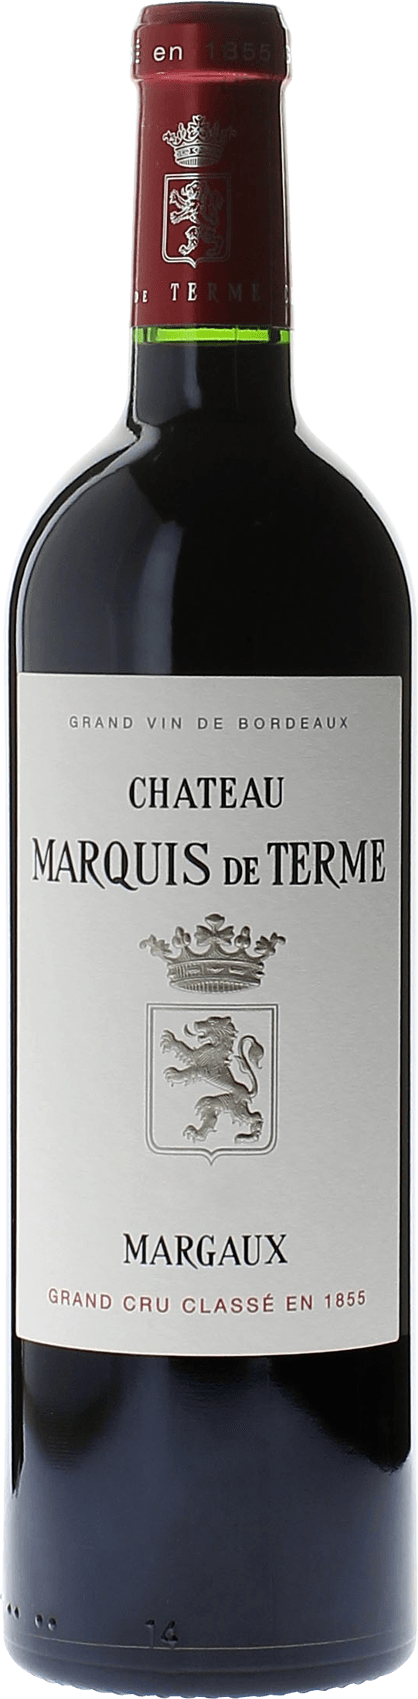 Marquis de terme 1989 4me Grand cru class Margaux, Bordeaux rouge